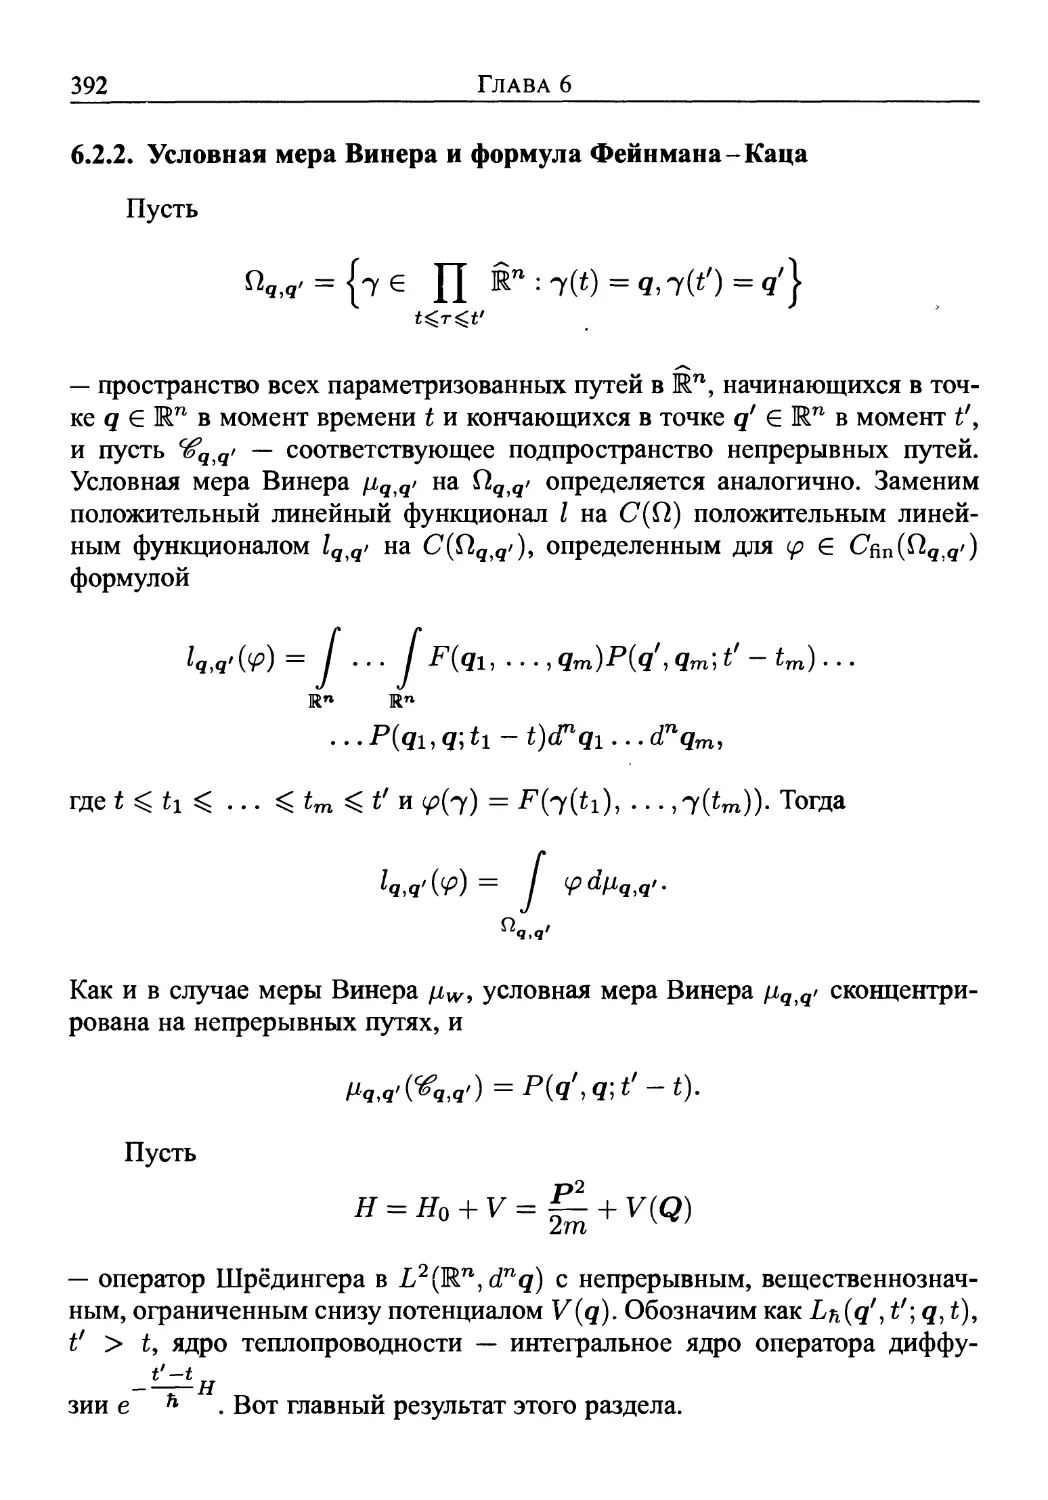 6.2.2. Условная мера Винера и формула Фейнмана-Каца